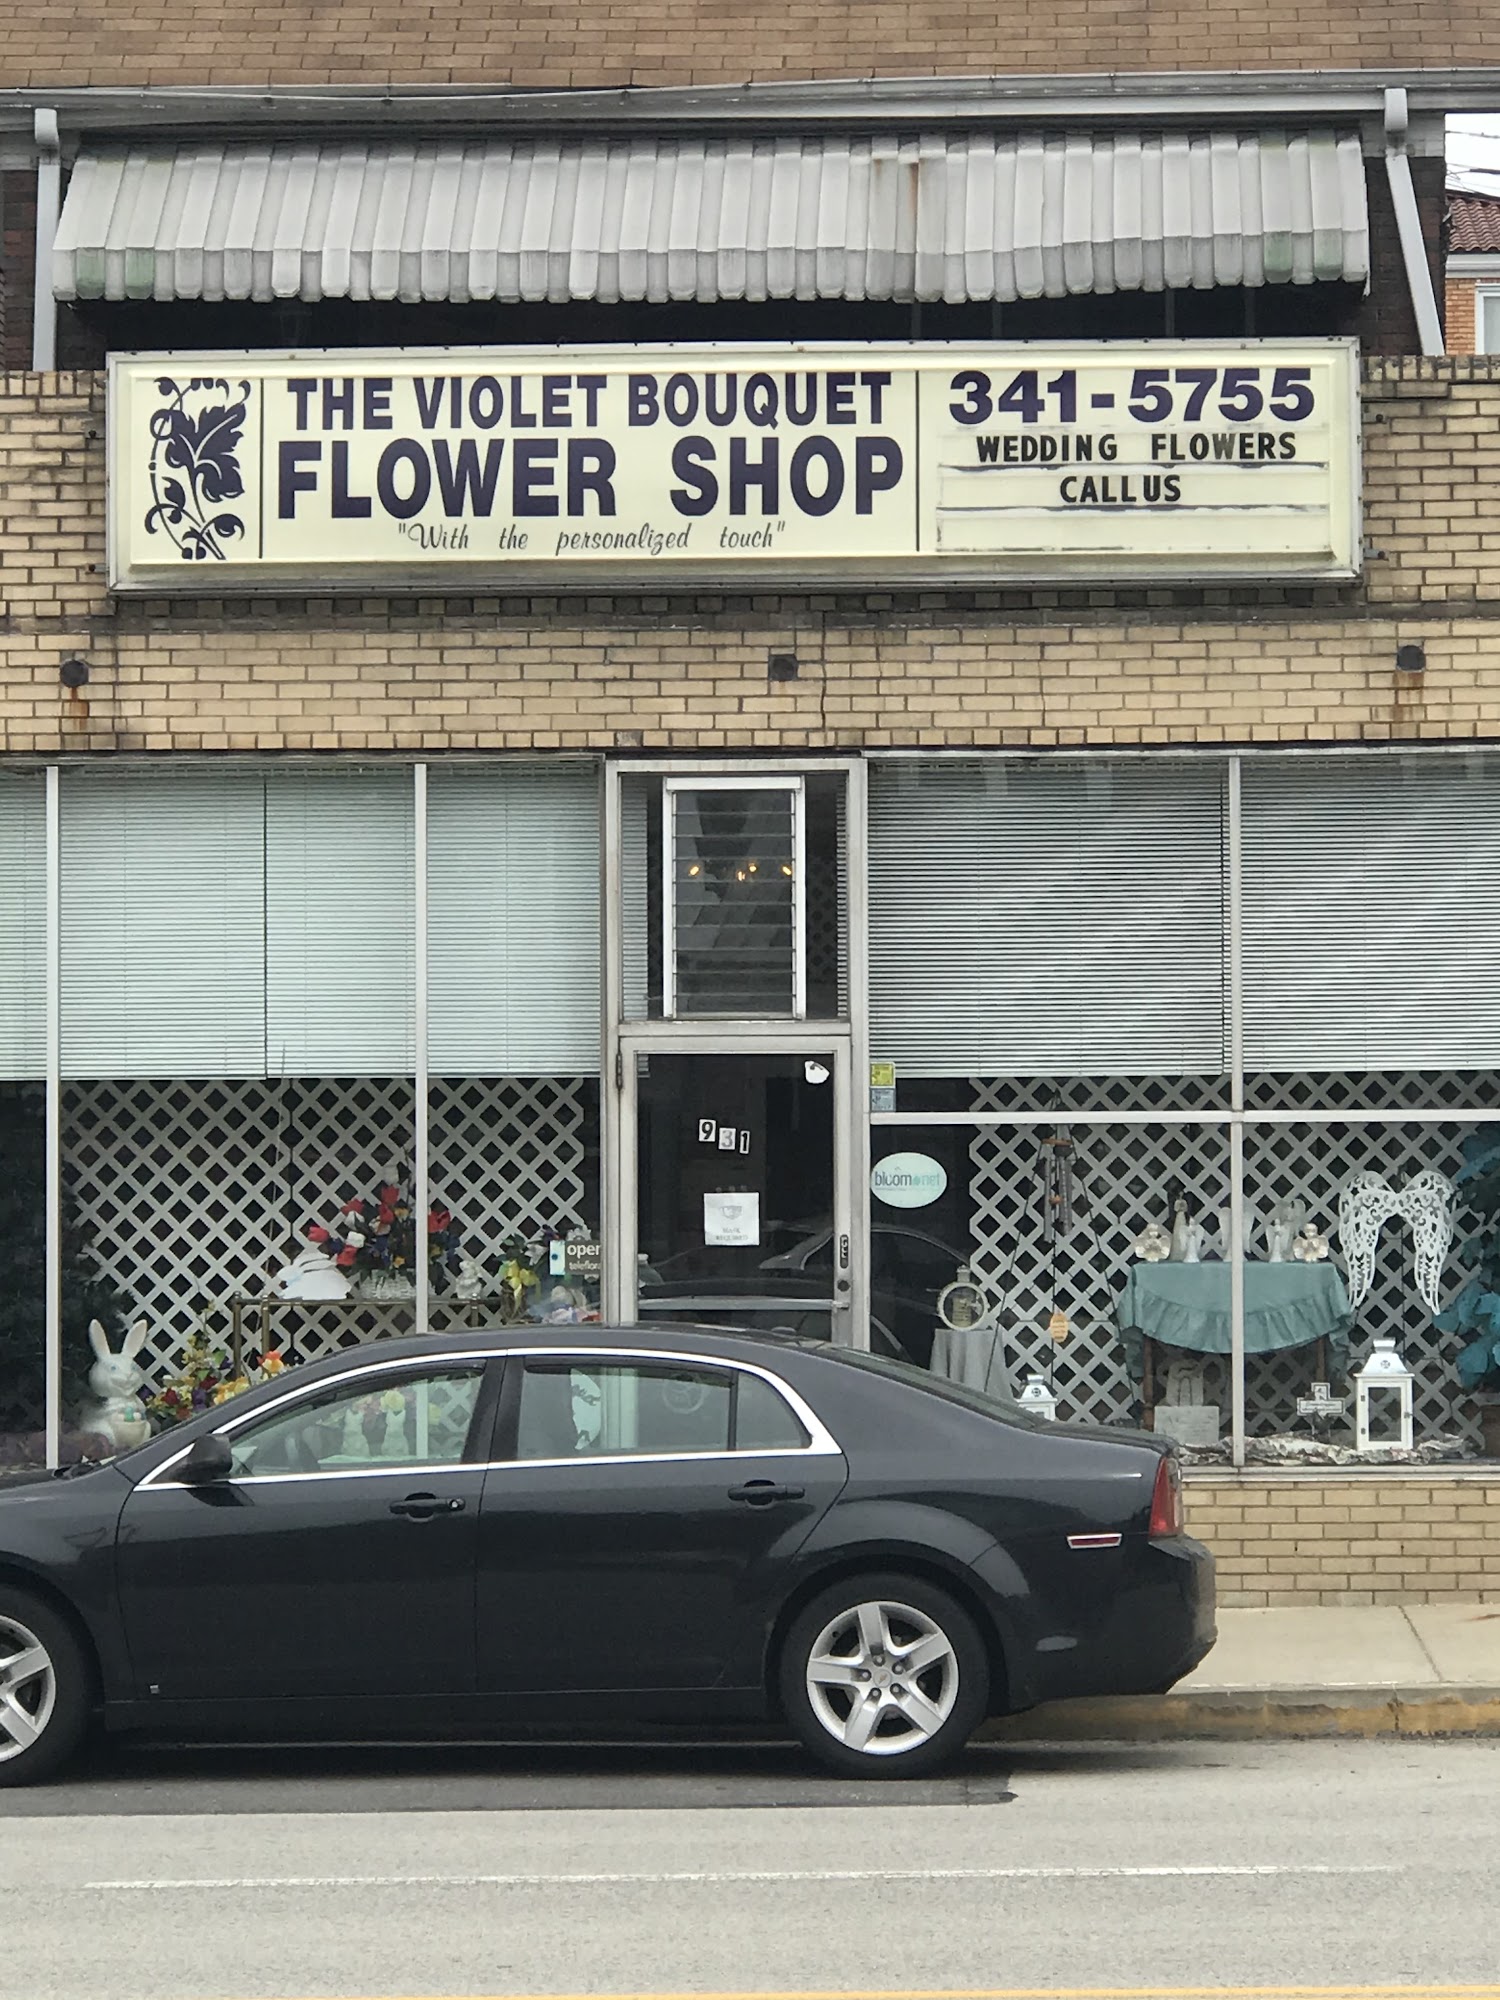 The Violet Bouquet Flower Shop